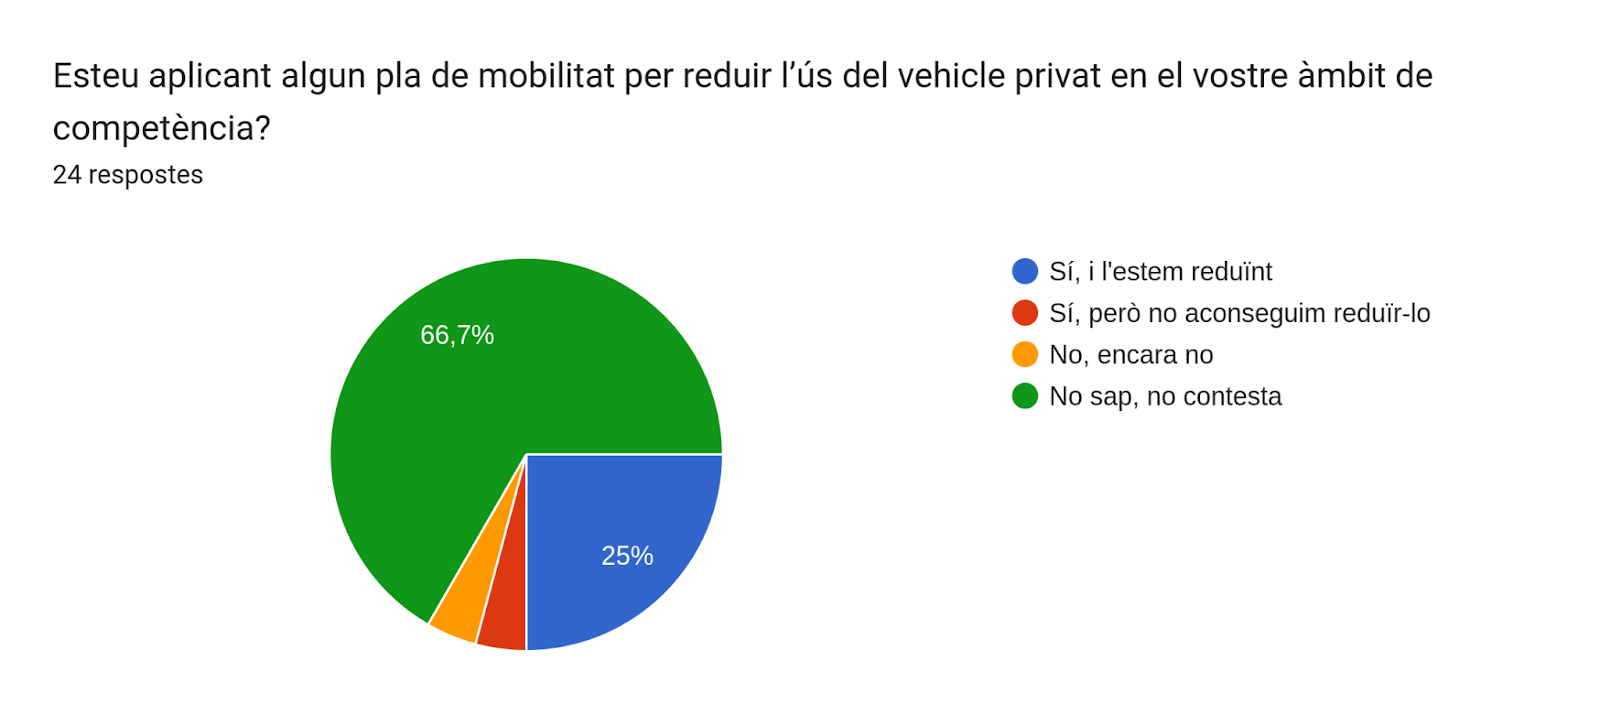 Gràfic de respostes de Formularis. Títol de la pregunta: Esteu aplicant algun pla de mobilitat per reduir l’ús del vehicle privat en el vostre àmbit de competència?. Nombre de respostes: 24 respostes.